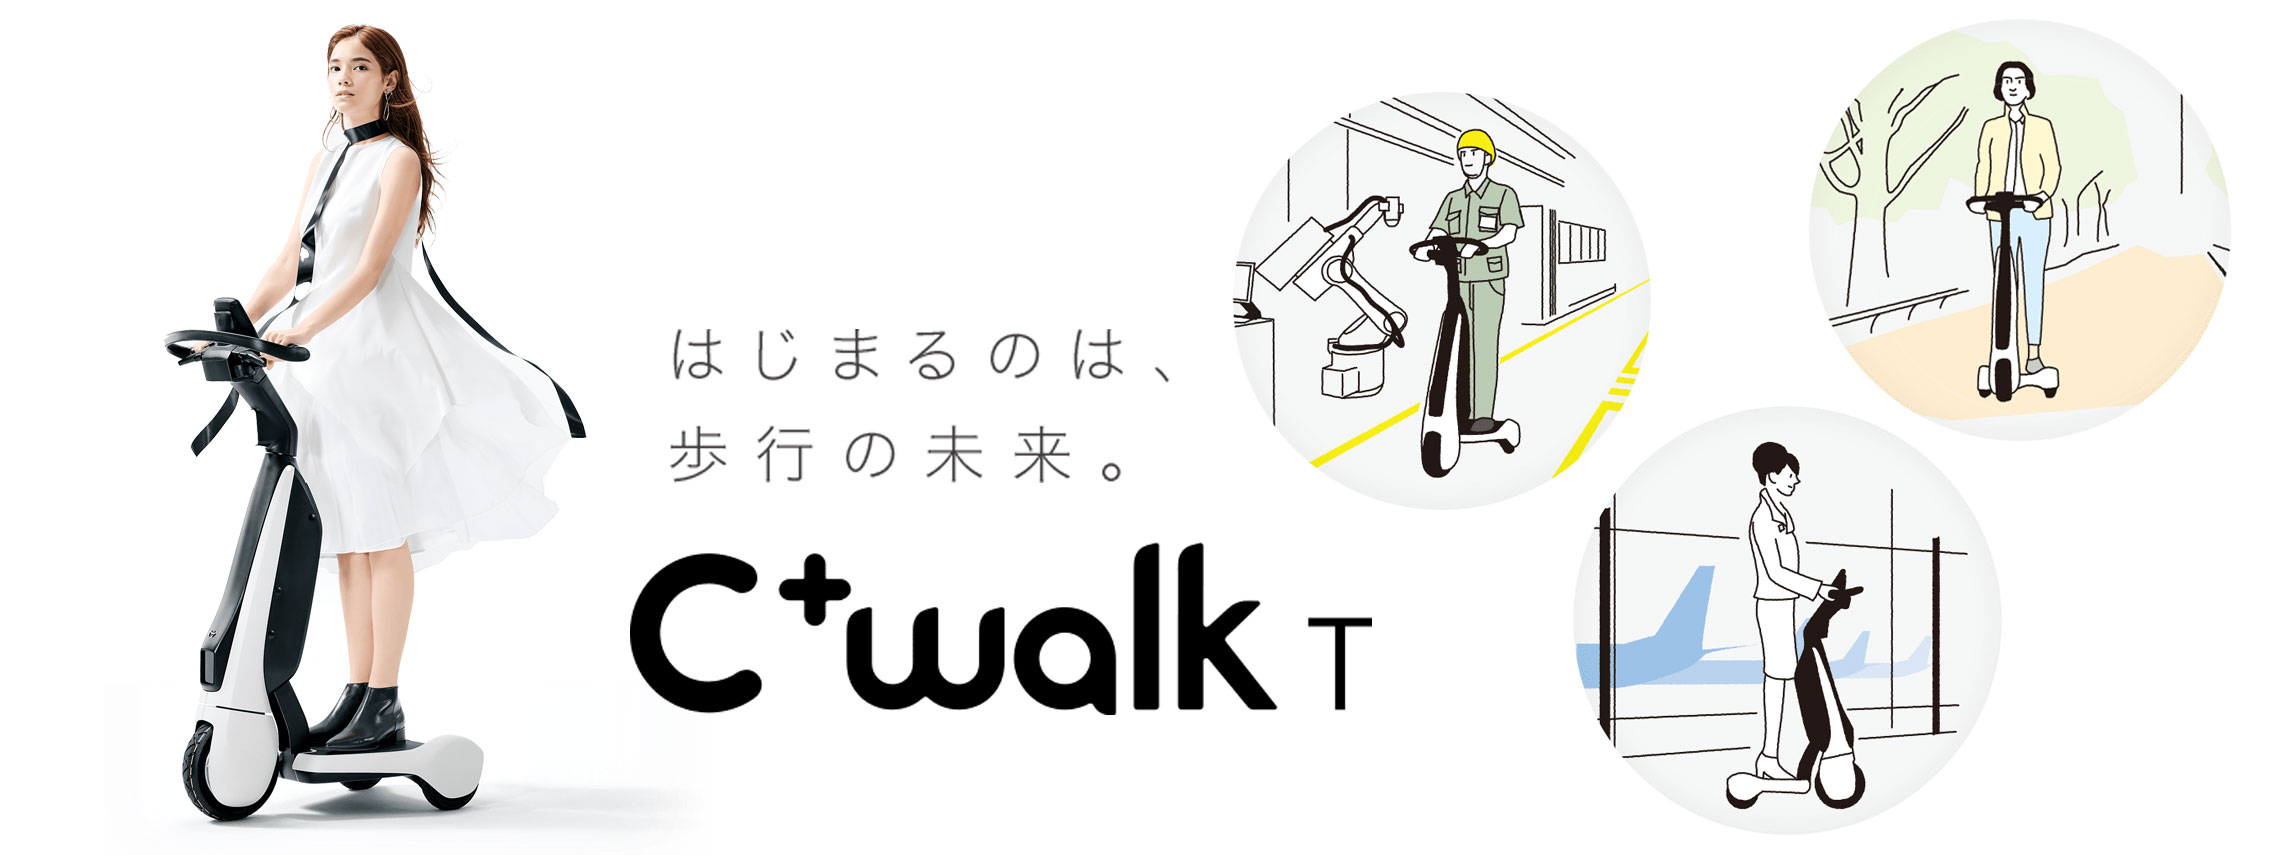 CwalkT_mv